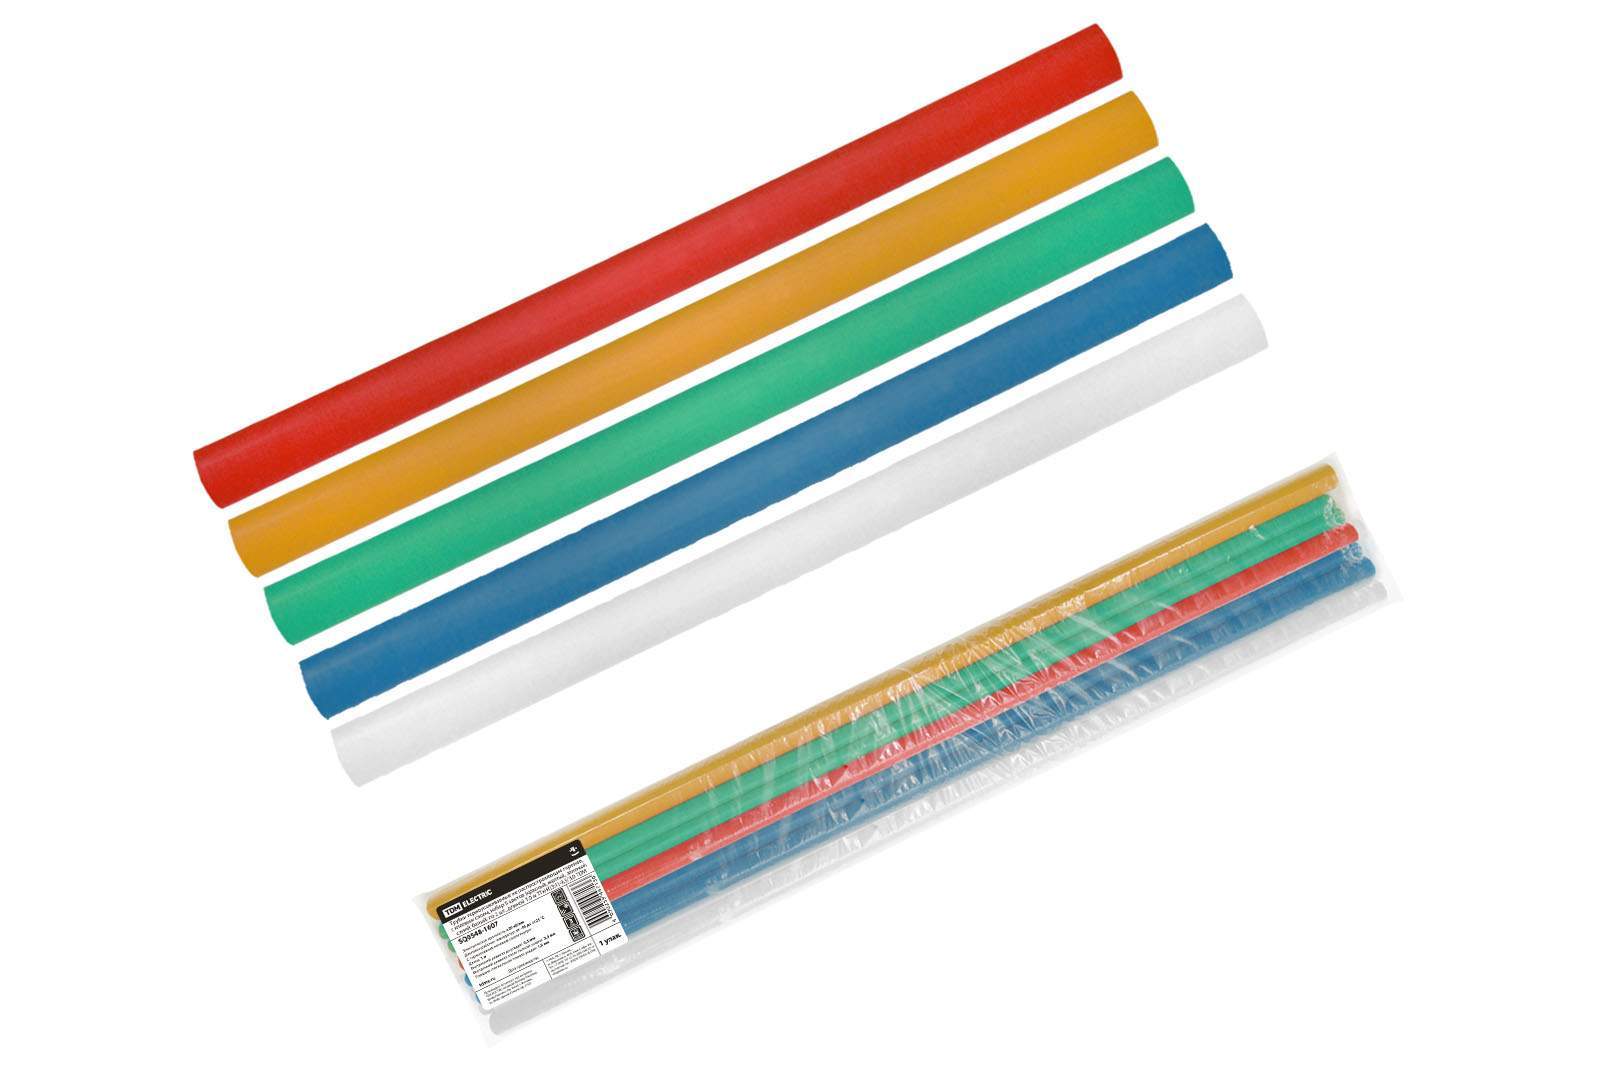 трубки термоусаживаемые, клеевые, набор 5 цветов по 2 шт. тткнг(3:1)-9,5/3,0 tdm от BTSprom.by